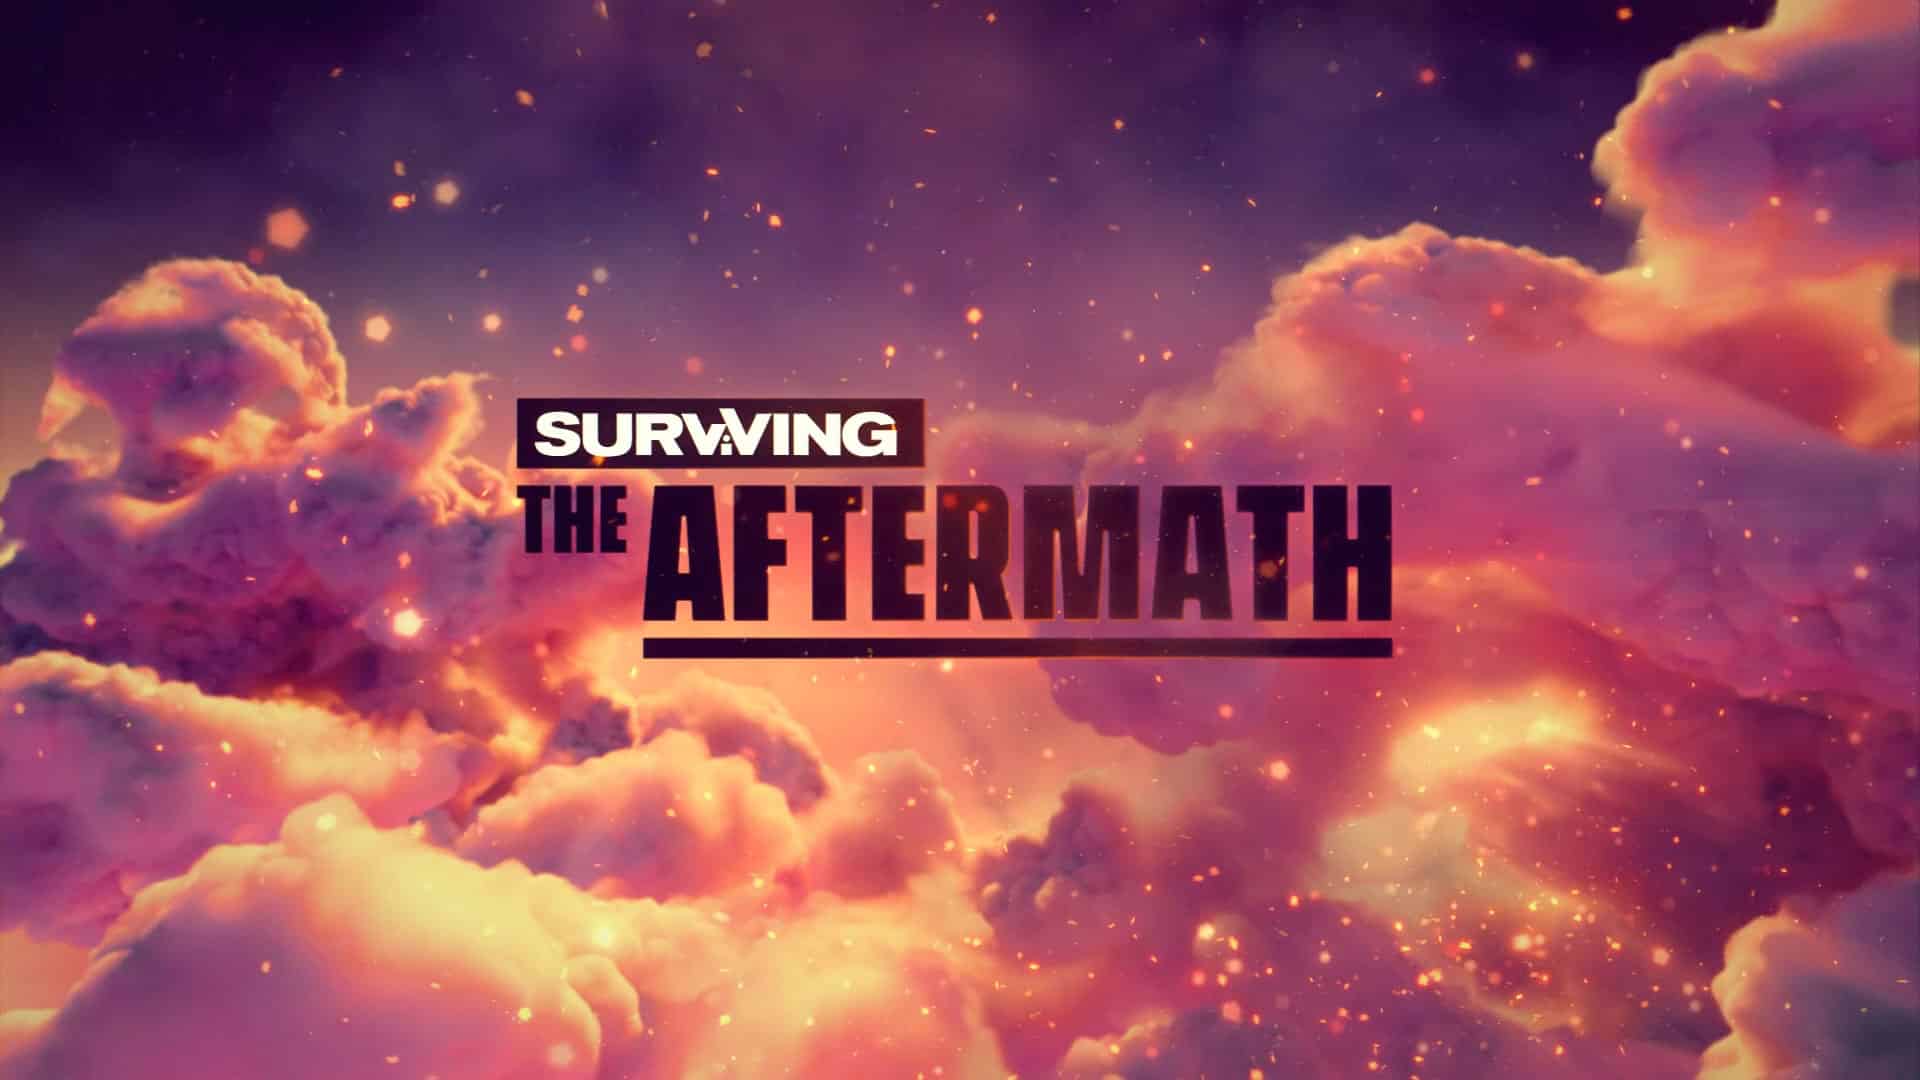 Surviving the Aftermath Teaser3429 babt